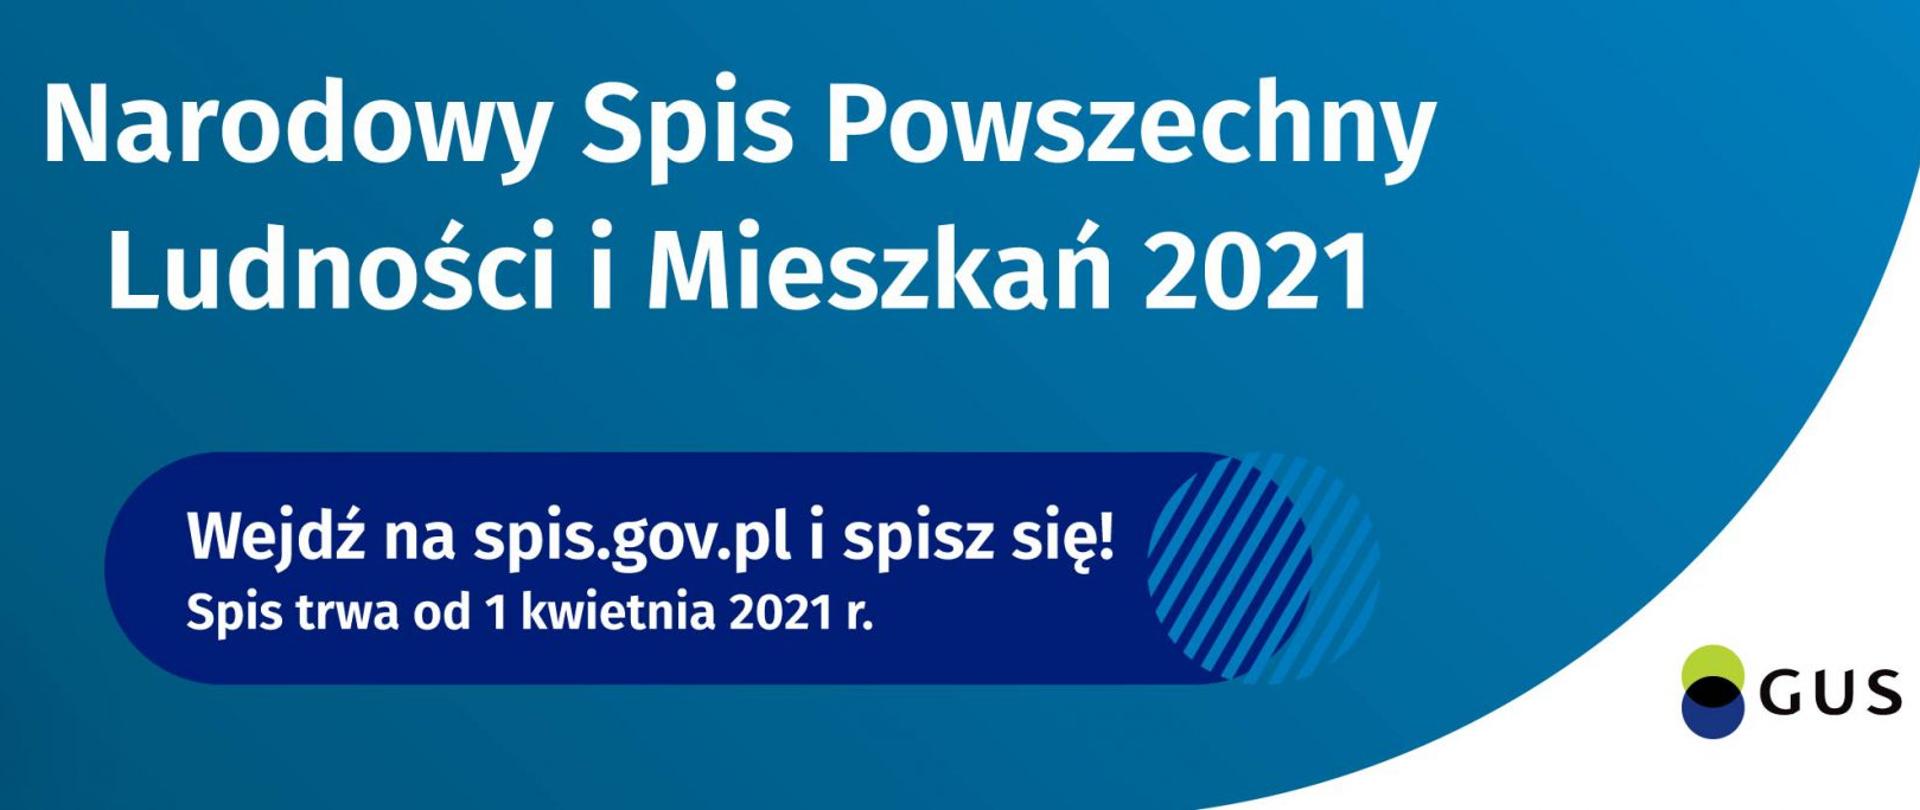 Baner z tekstem: Narodowy Spis Powszechny Ludności i Mieszkań 2021. Wejdź na spis.gov.pl i spisz się! Spis trwa od 1 kwietnia 2021 r. Liczmy się dla polski. Baner opatrzony logiem GUS